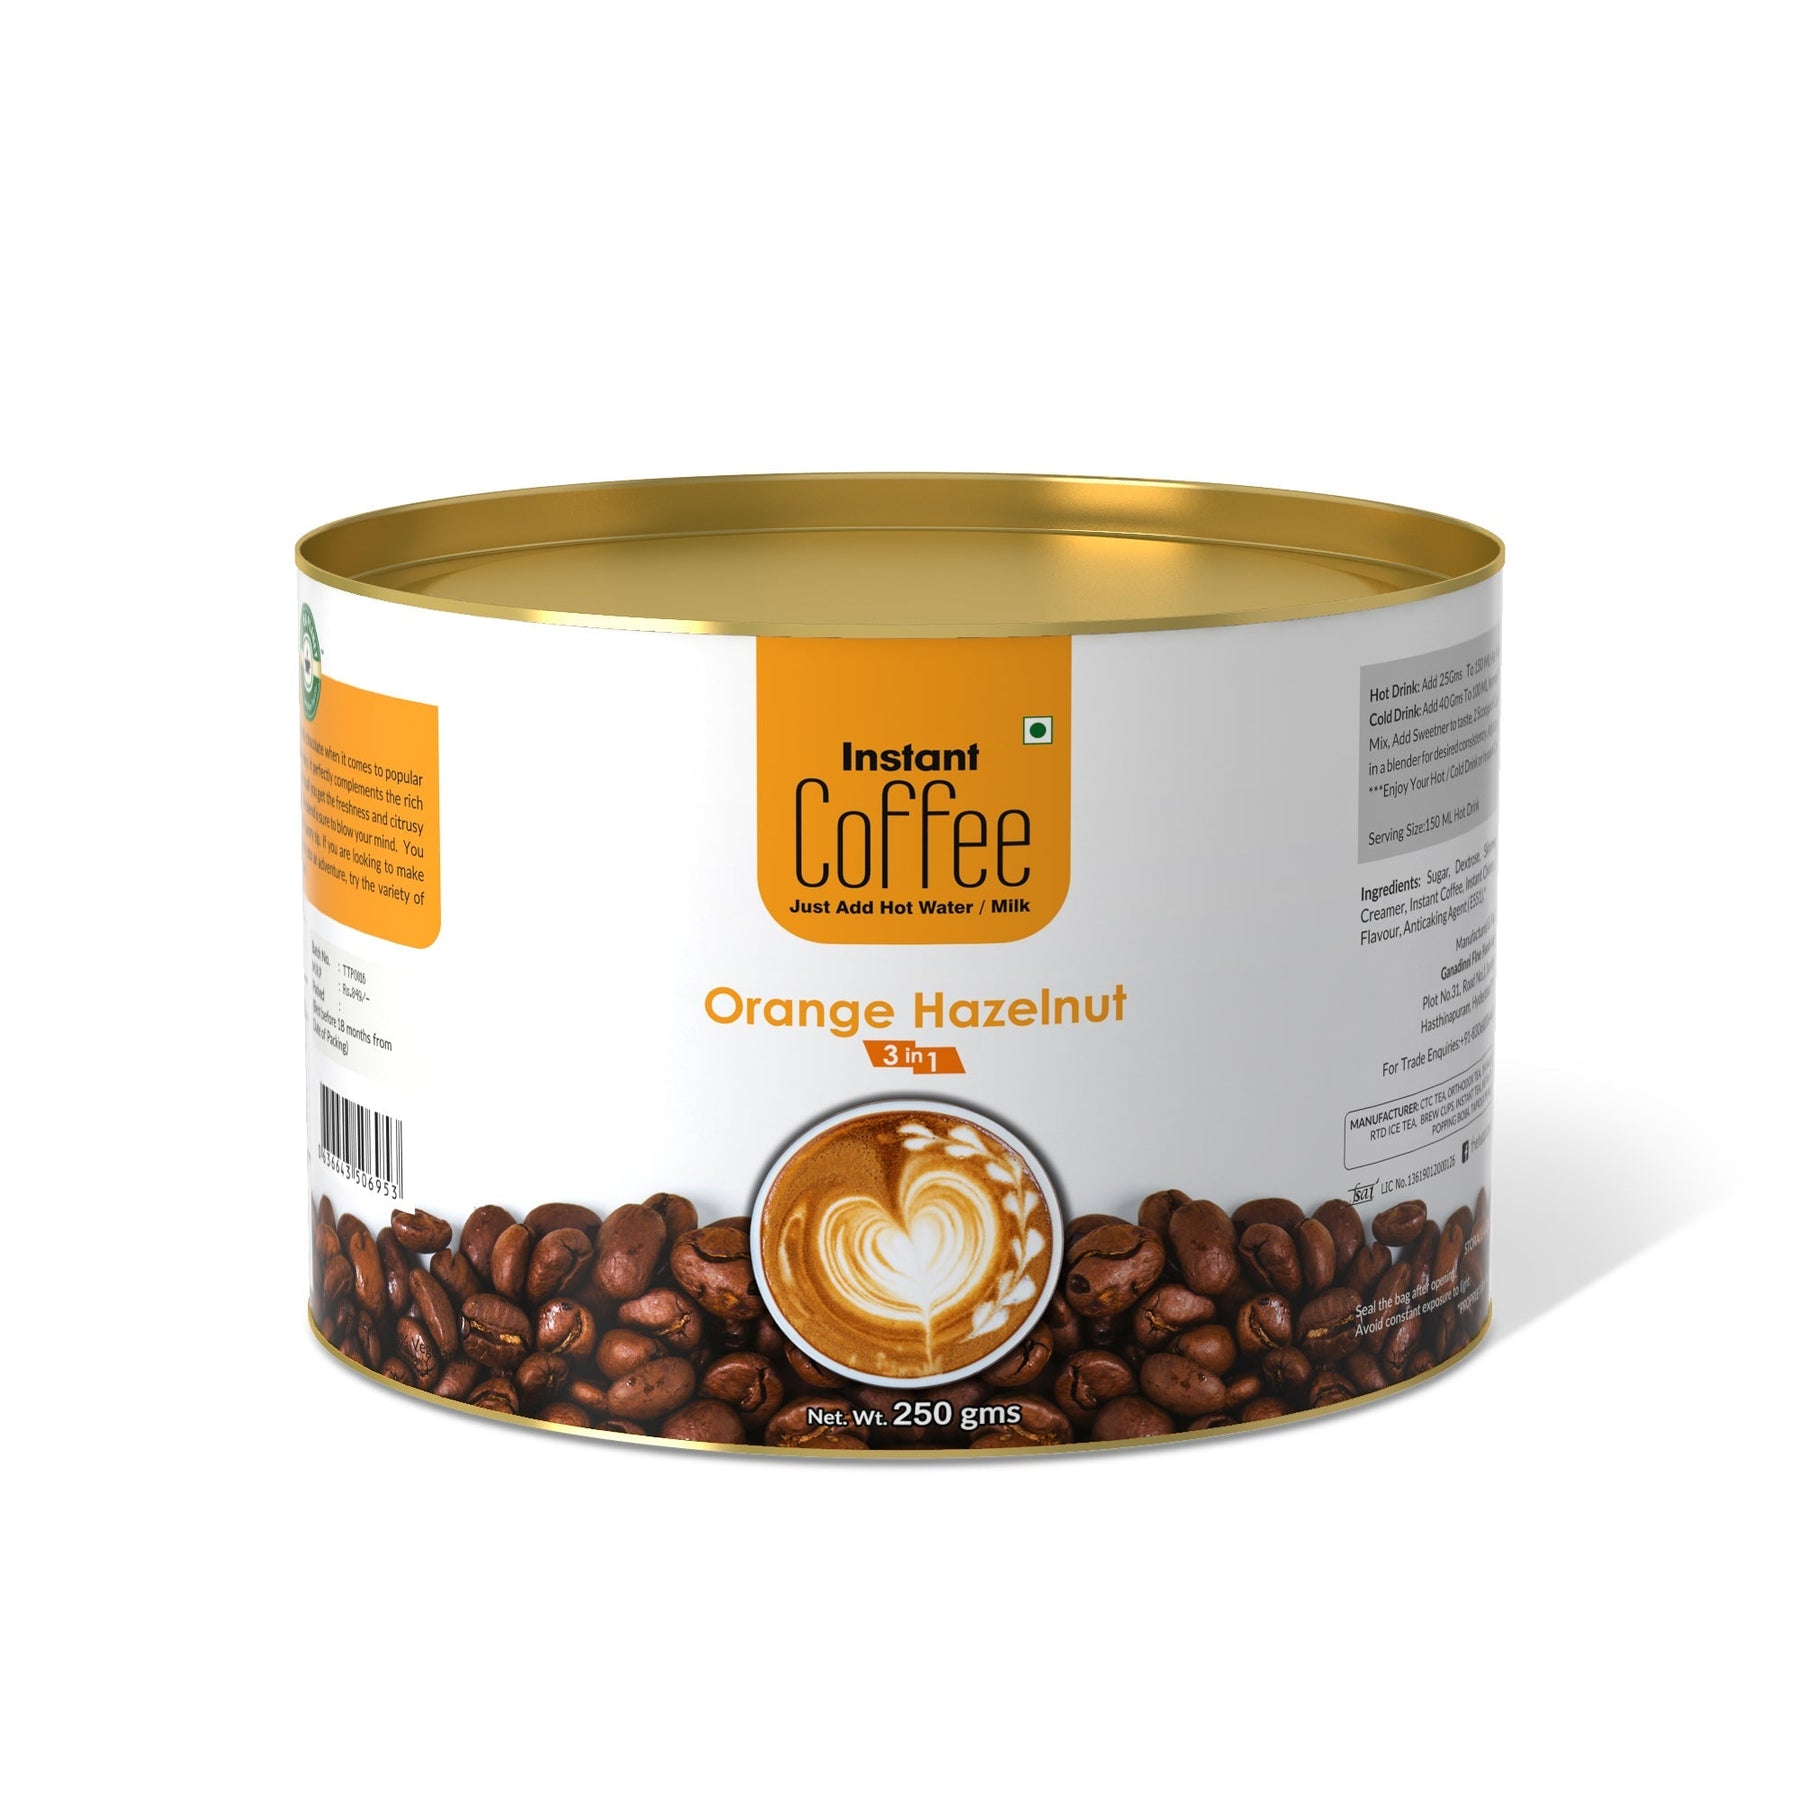 Orange Hazelnut Instant Coffee Premix (3 in 1) - 800 gms